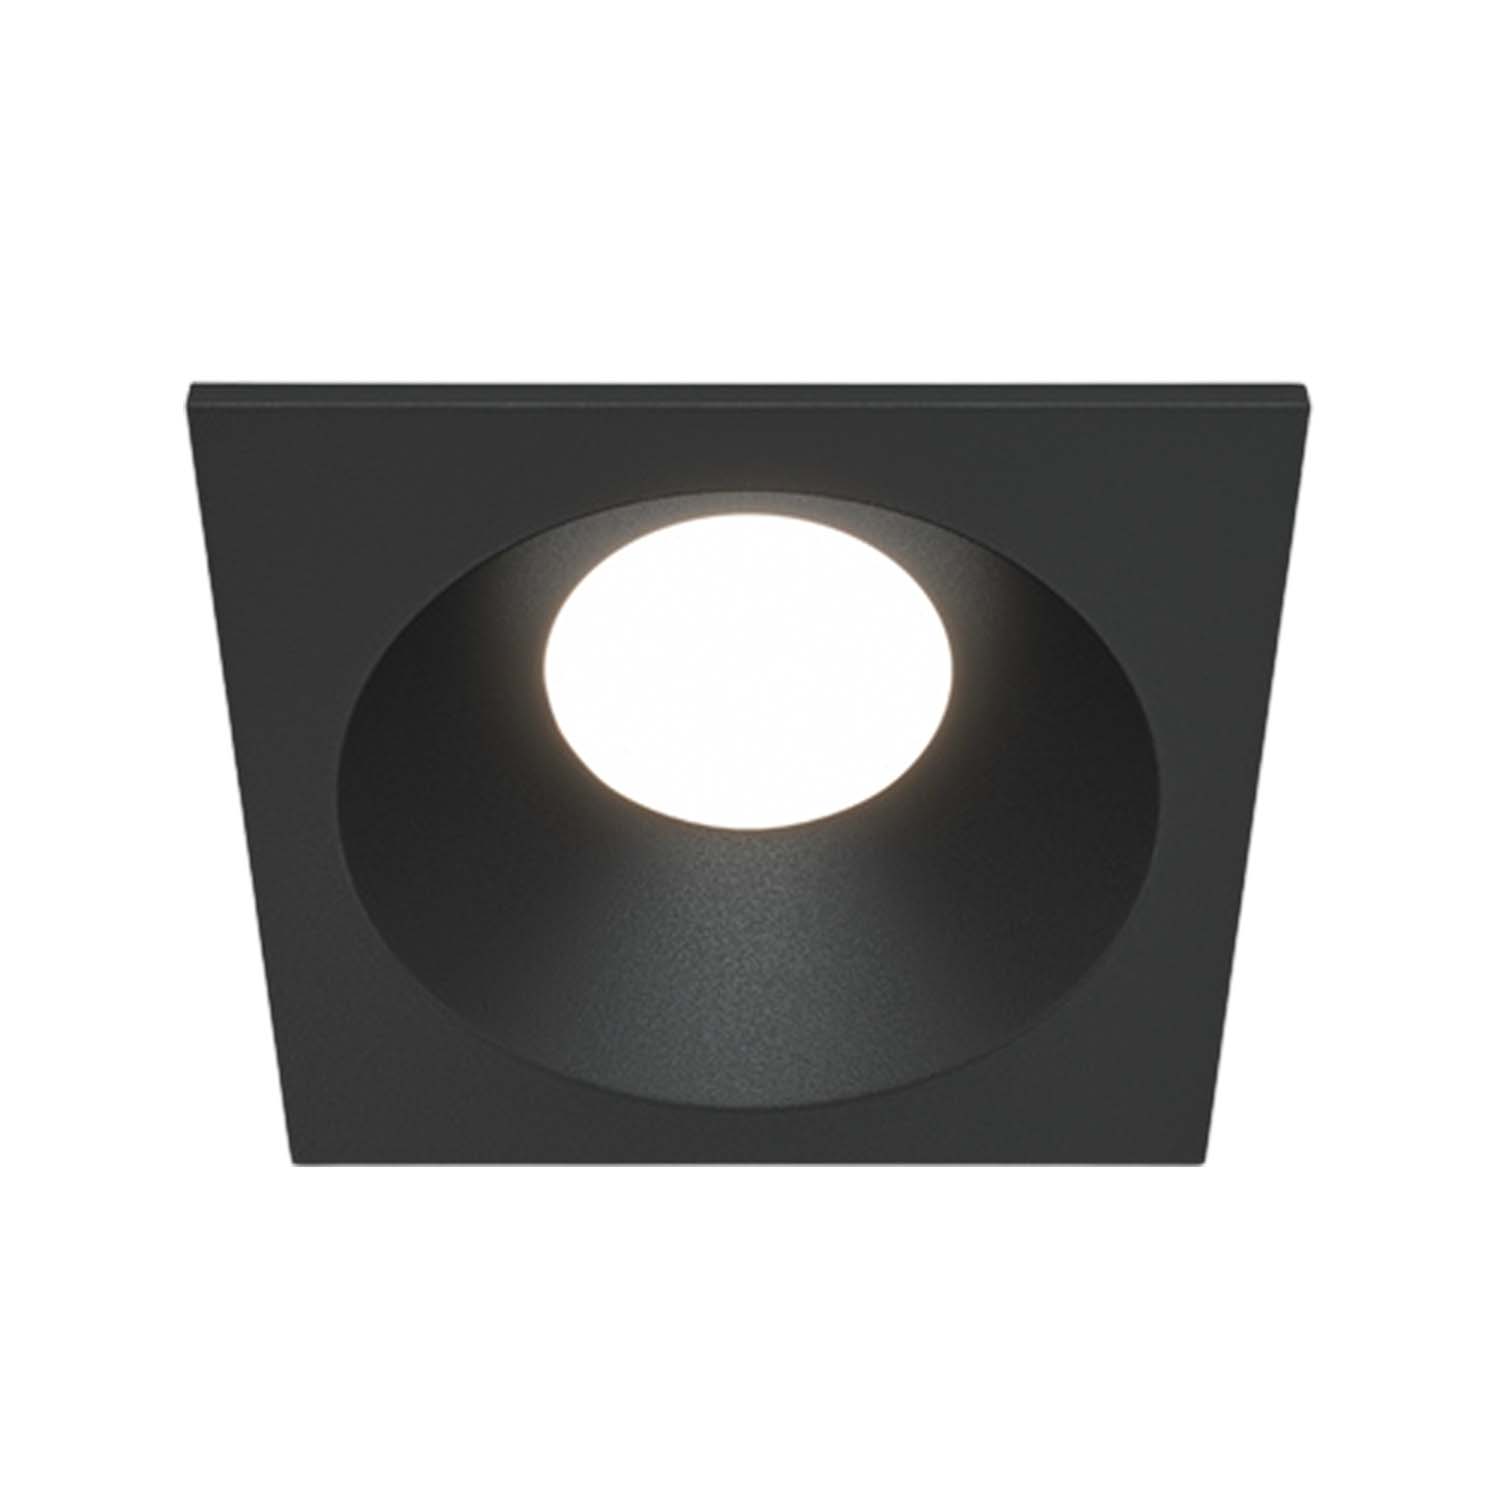 ZOOM B – Wasserdichter quadratischer Einbaustrahler für den Außenbereich, schwarz oder weiß, 85 mm